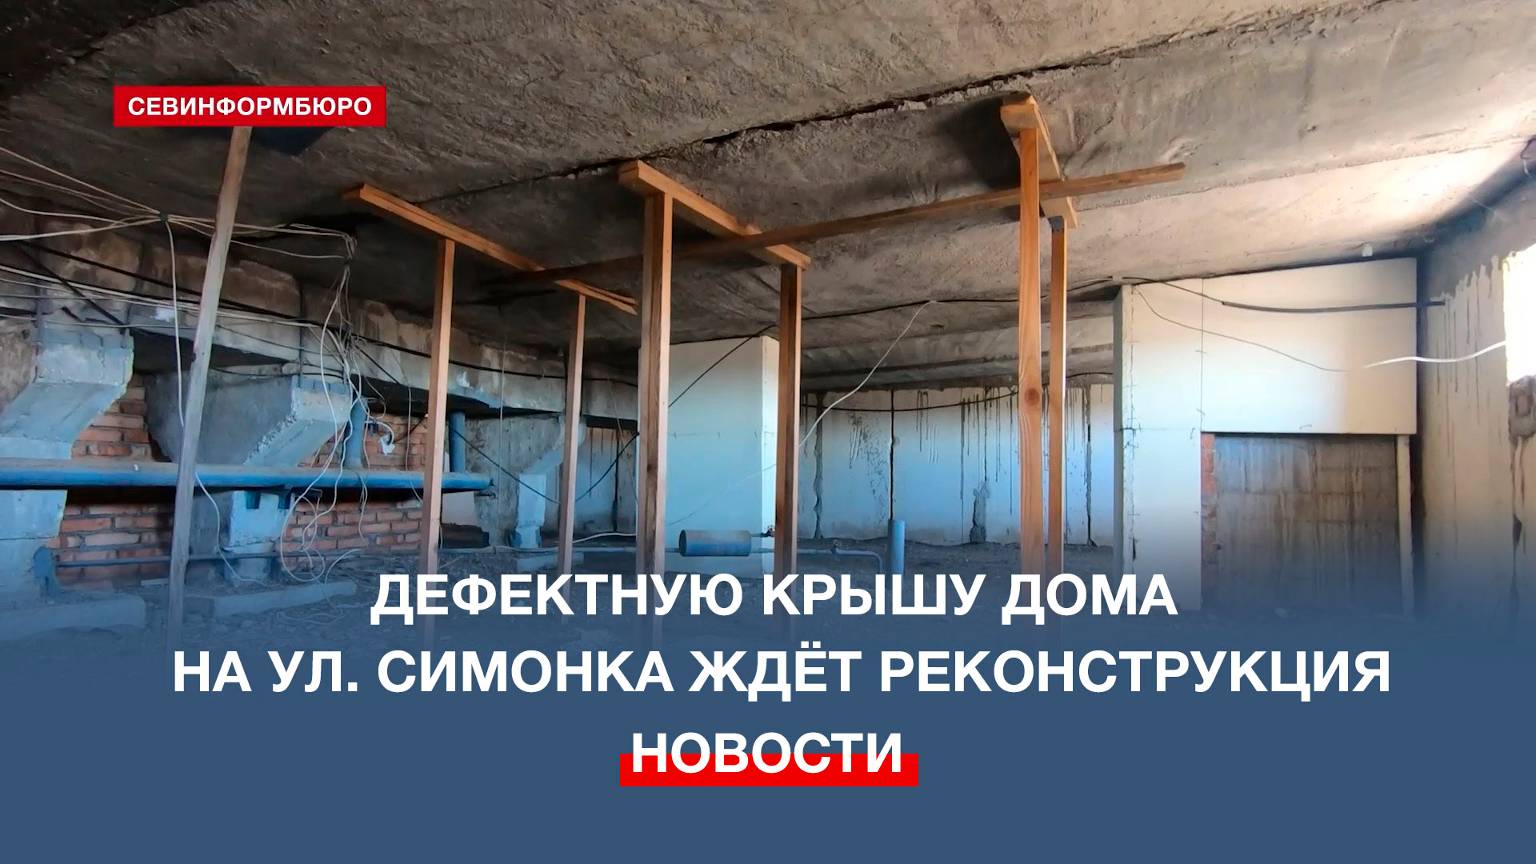 Решить проблему фактического отсутствия крыши на доме по ул. Симонка можно за 33 млн рублей